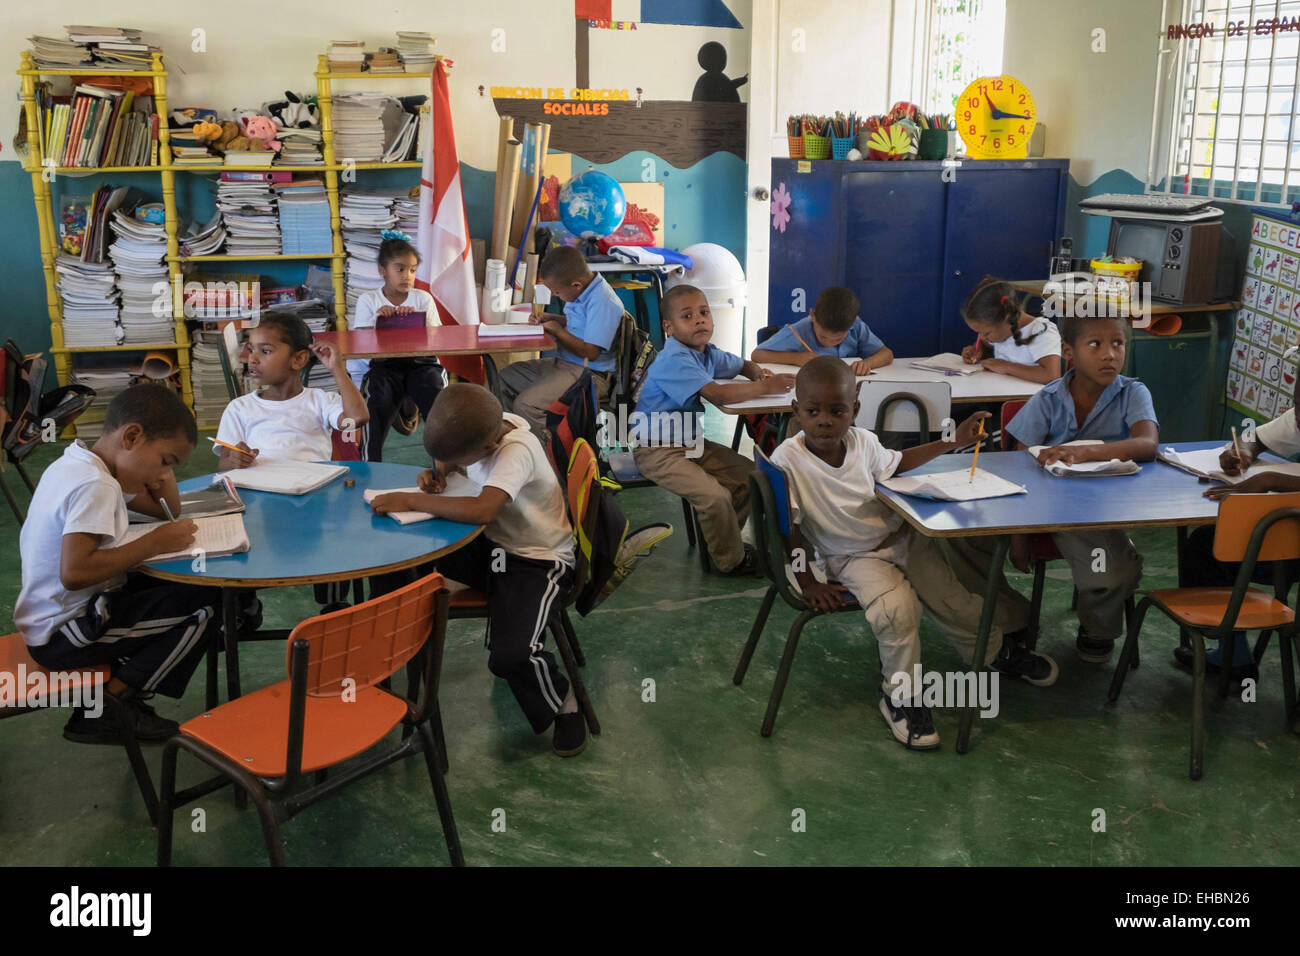 L'école primaire d'enfants qui étudient dans une classe d'école de village près de Puerto Plata, République dominicaine, îles des Caraïbes Banque D'Images